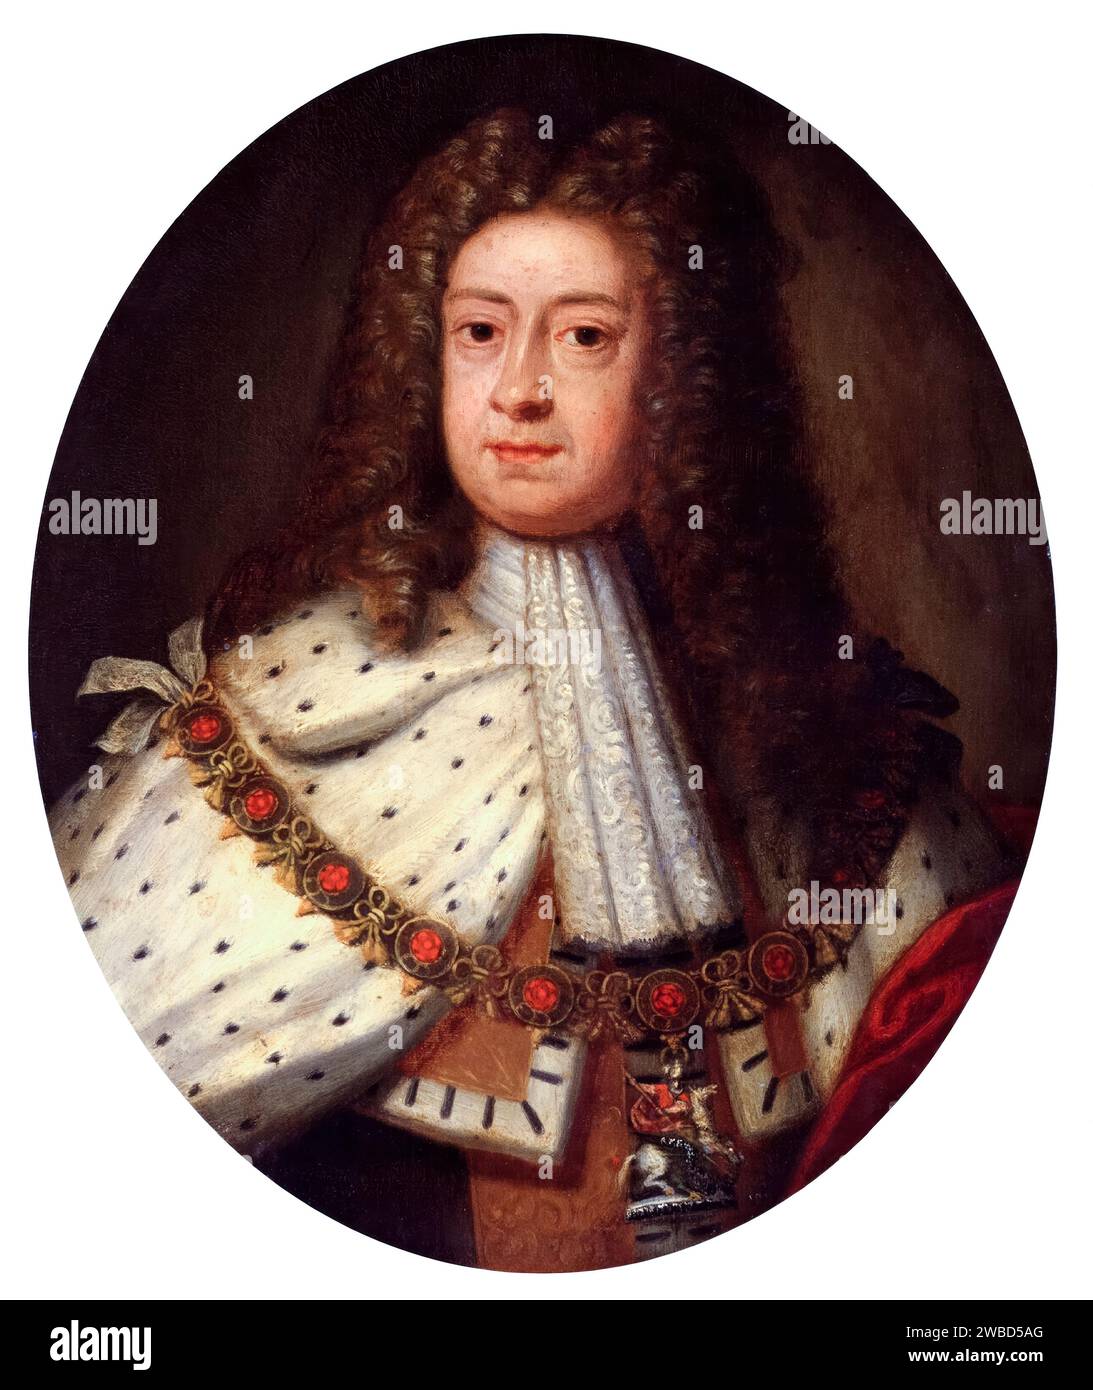 Jorge I de Gran Bretaña e Irlanda (1660-1727), reinó (1714-1727), retrato de pintura al óleo sobre cobre después de Sir Godfrey Kneller, circa 1714 Foto de stock